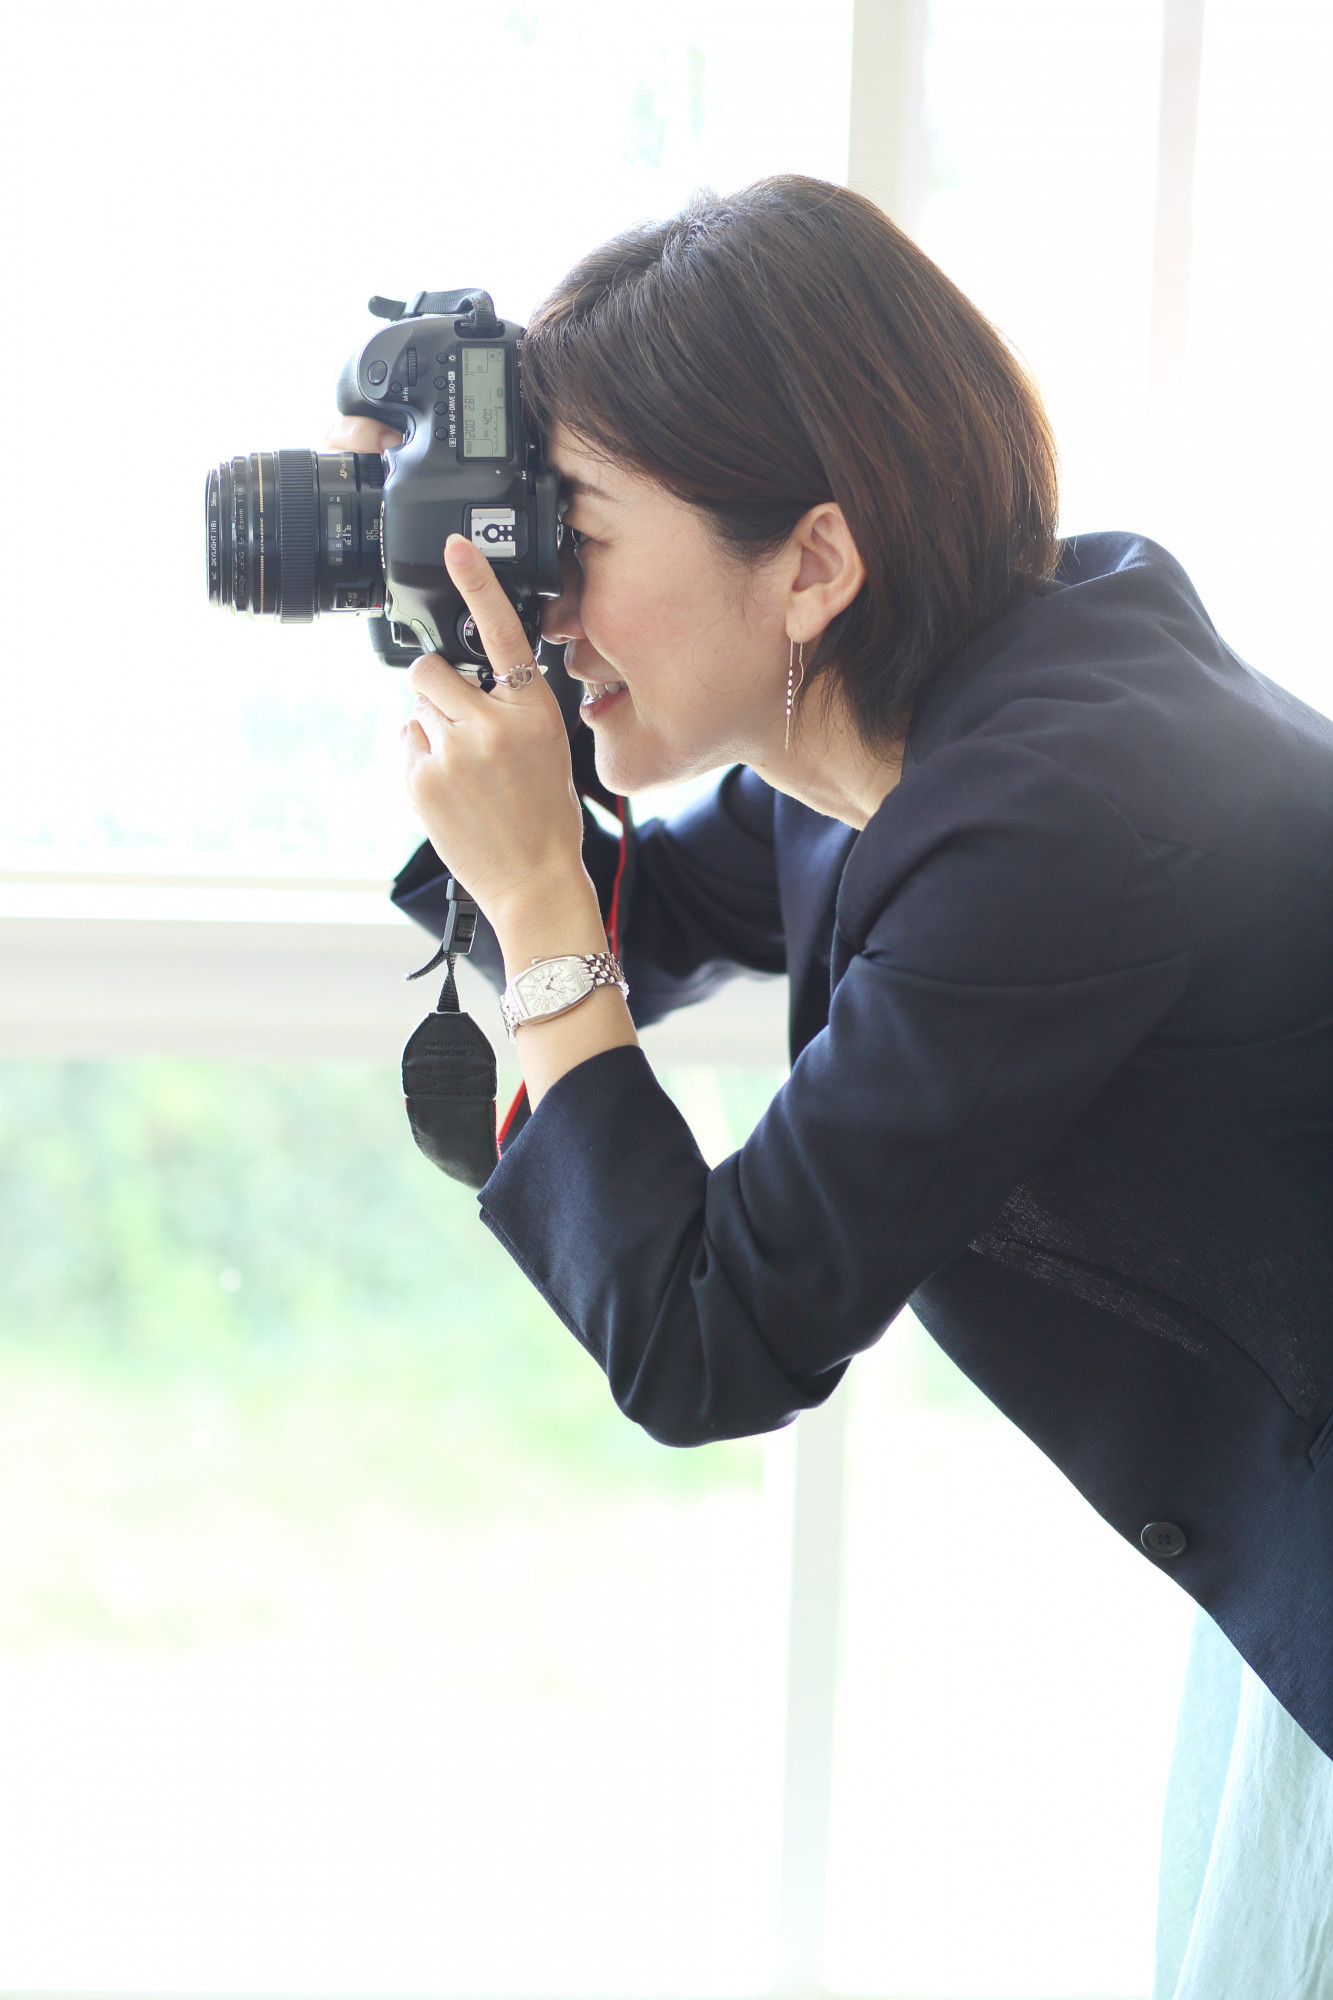 フォトグラファーNagasaki Shihoがカメラを構えている写真